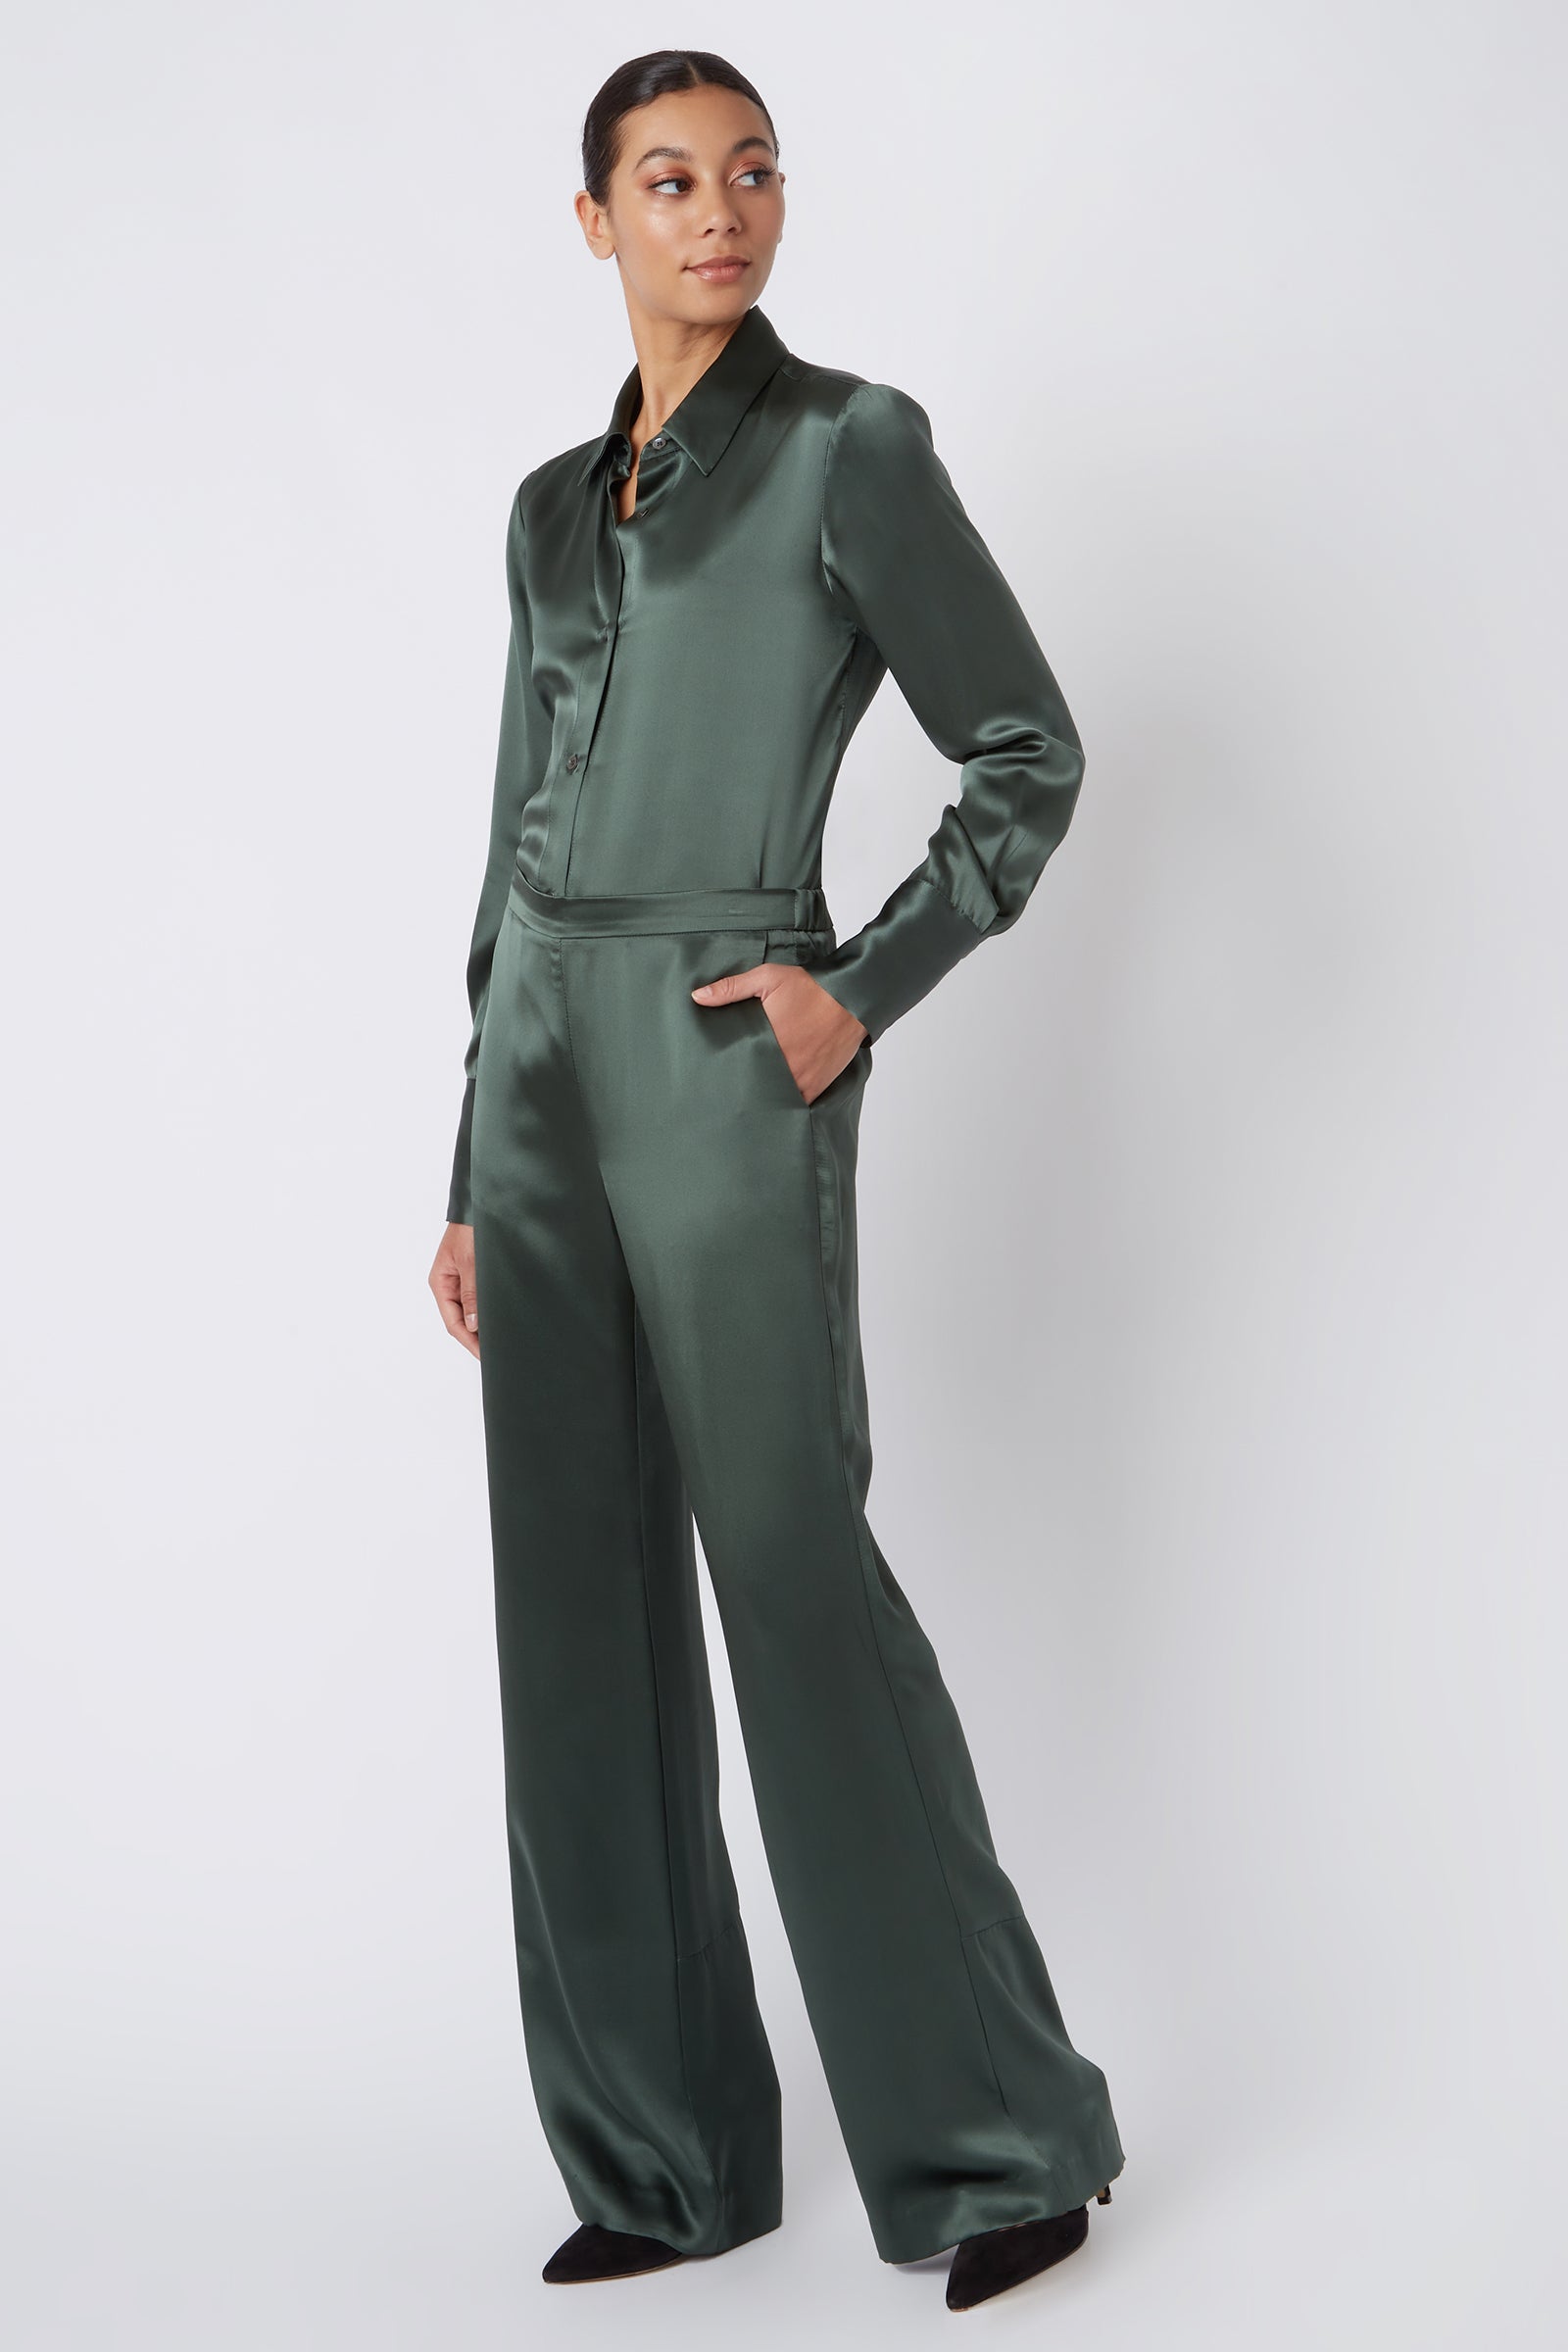 Kal Rieman Classic Silk Trouser in Loden on Model Full Side View